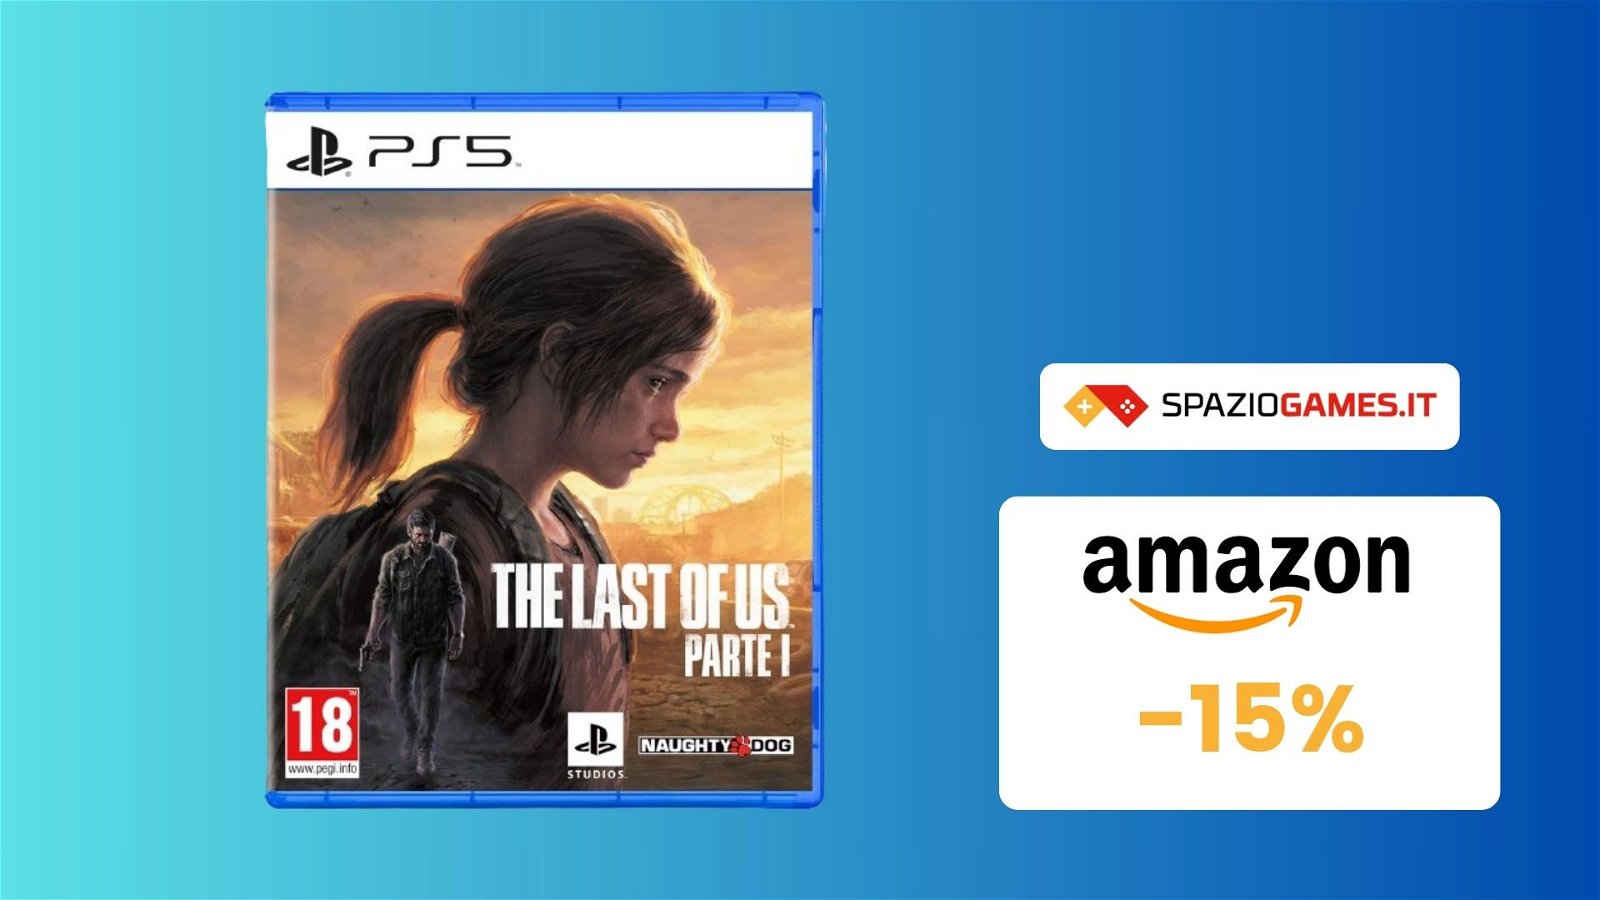 Rivivete la storia di Joel ed Ellie in The Last Of Us Parte 1 per PS5, ora IN OFFERTA! (-15%)